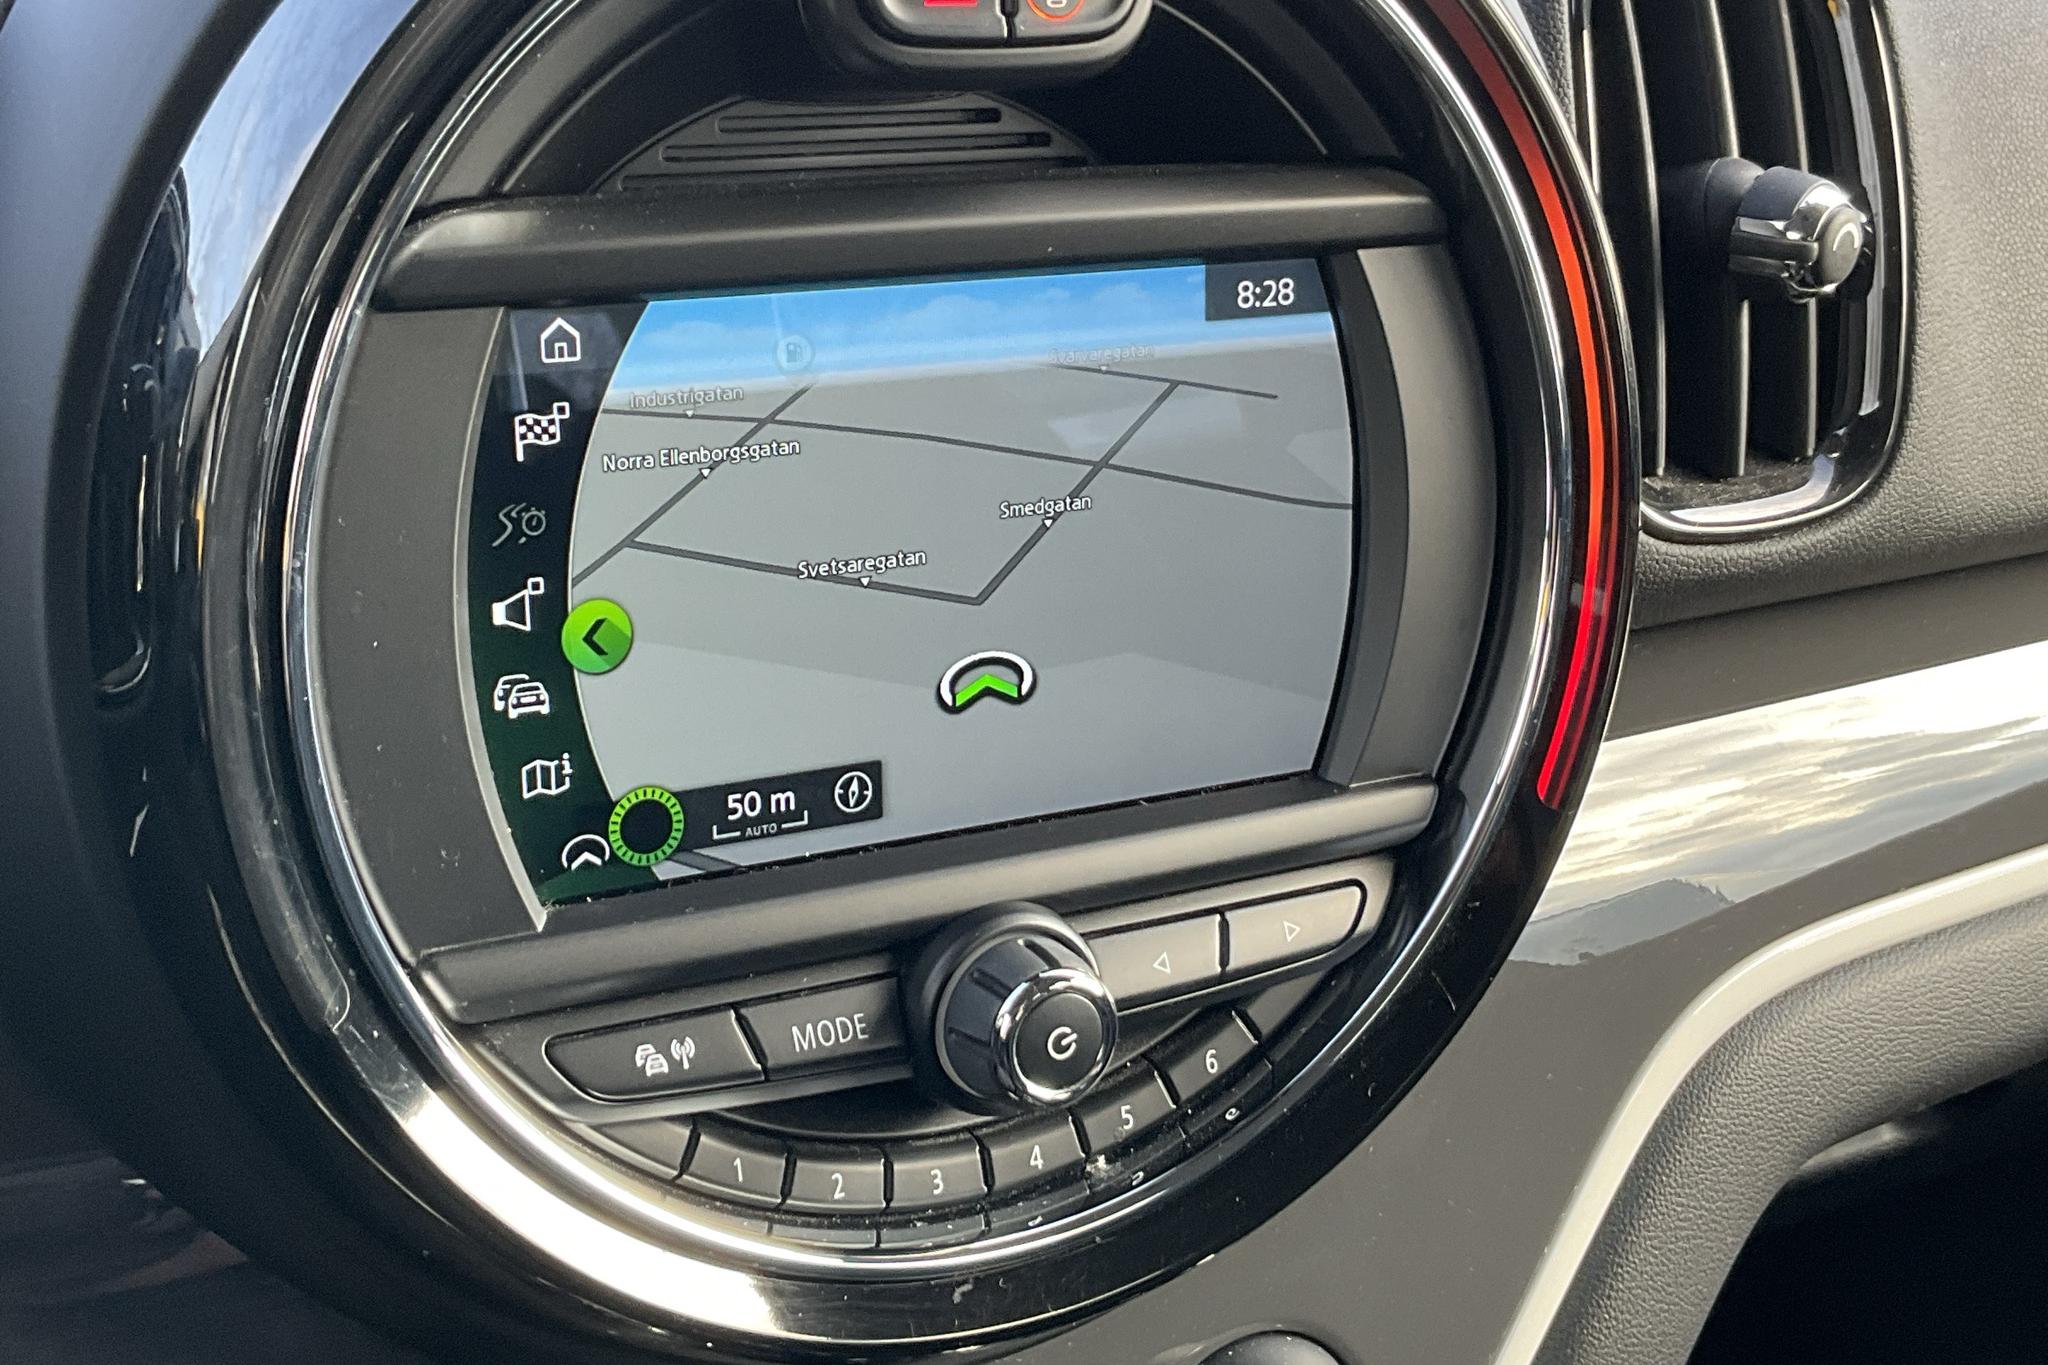 MINI Cooper S E ALL4 Countryman, F60 (224hk) - 73 320 km - Automatic - gray - 2019